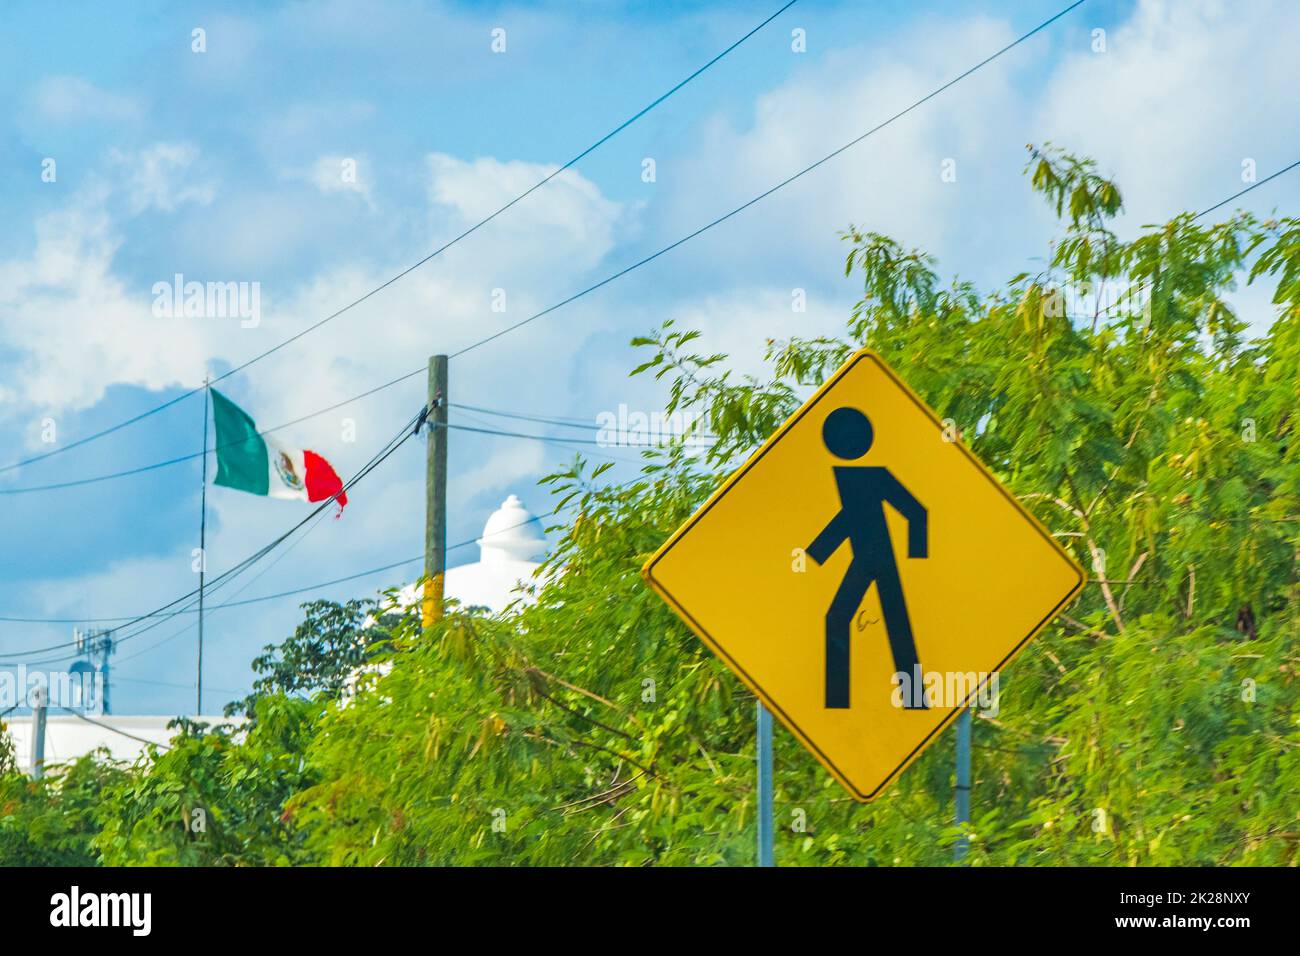 Señal amarilla de la carretera peatonal en la ciudad de Playa del Carmen Quintana Roo México con bandera mexicana. Foto de stock